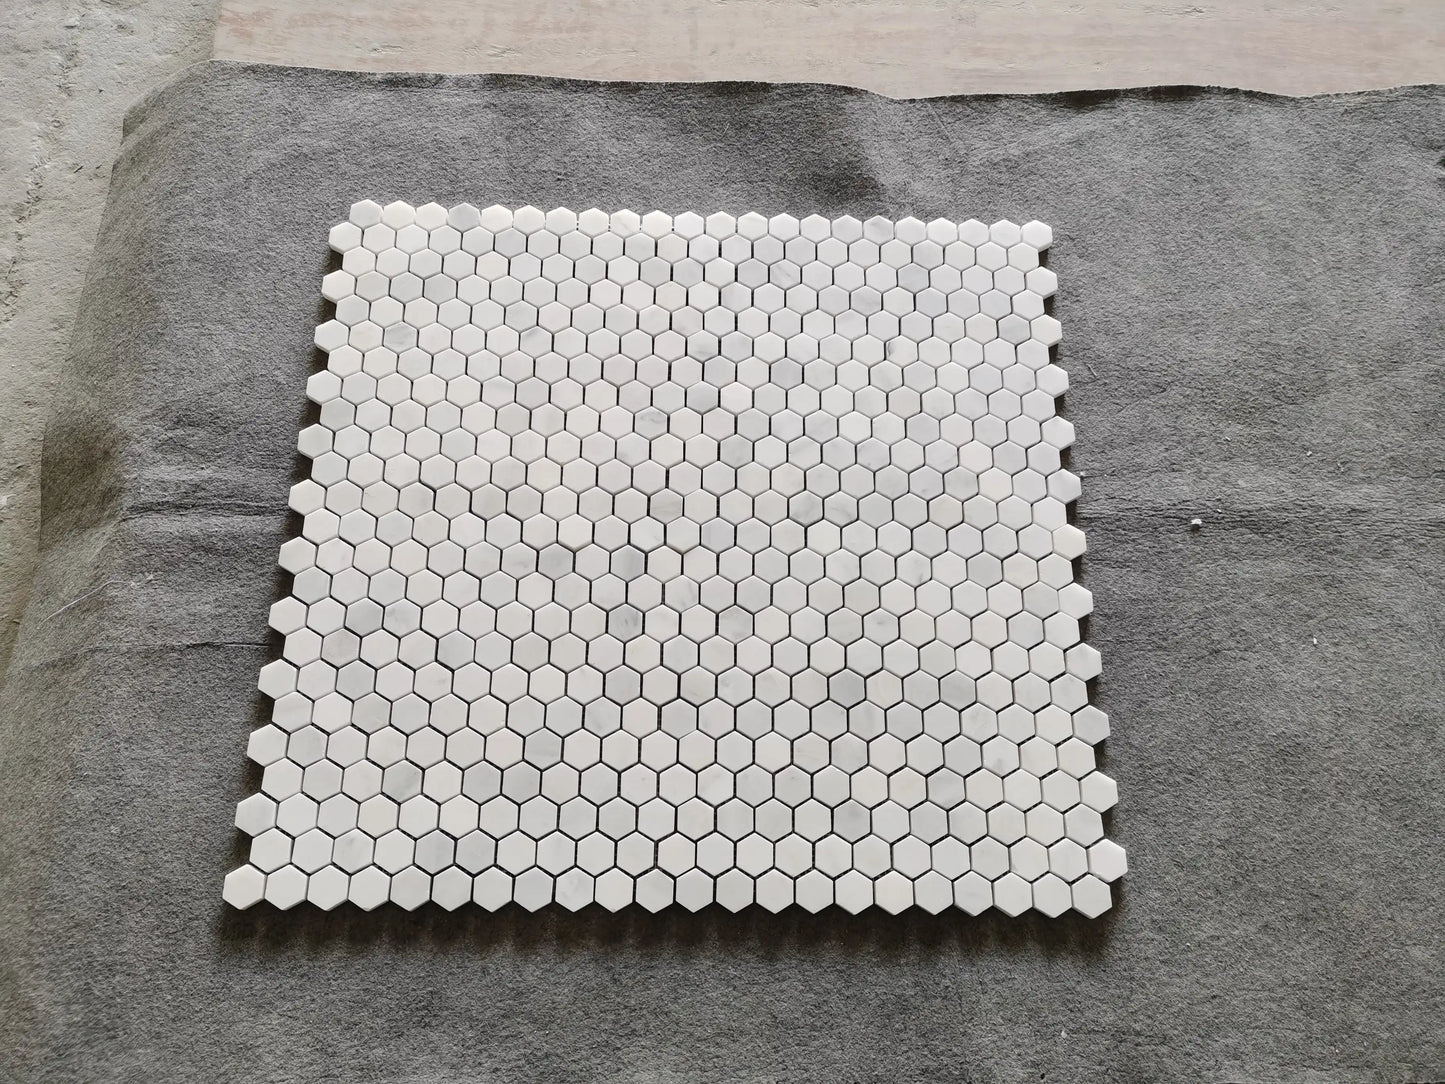 Oriental White Hexagon Mosaic Tile 1x1"